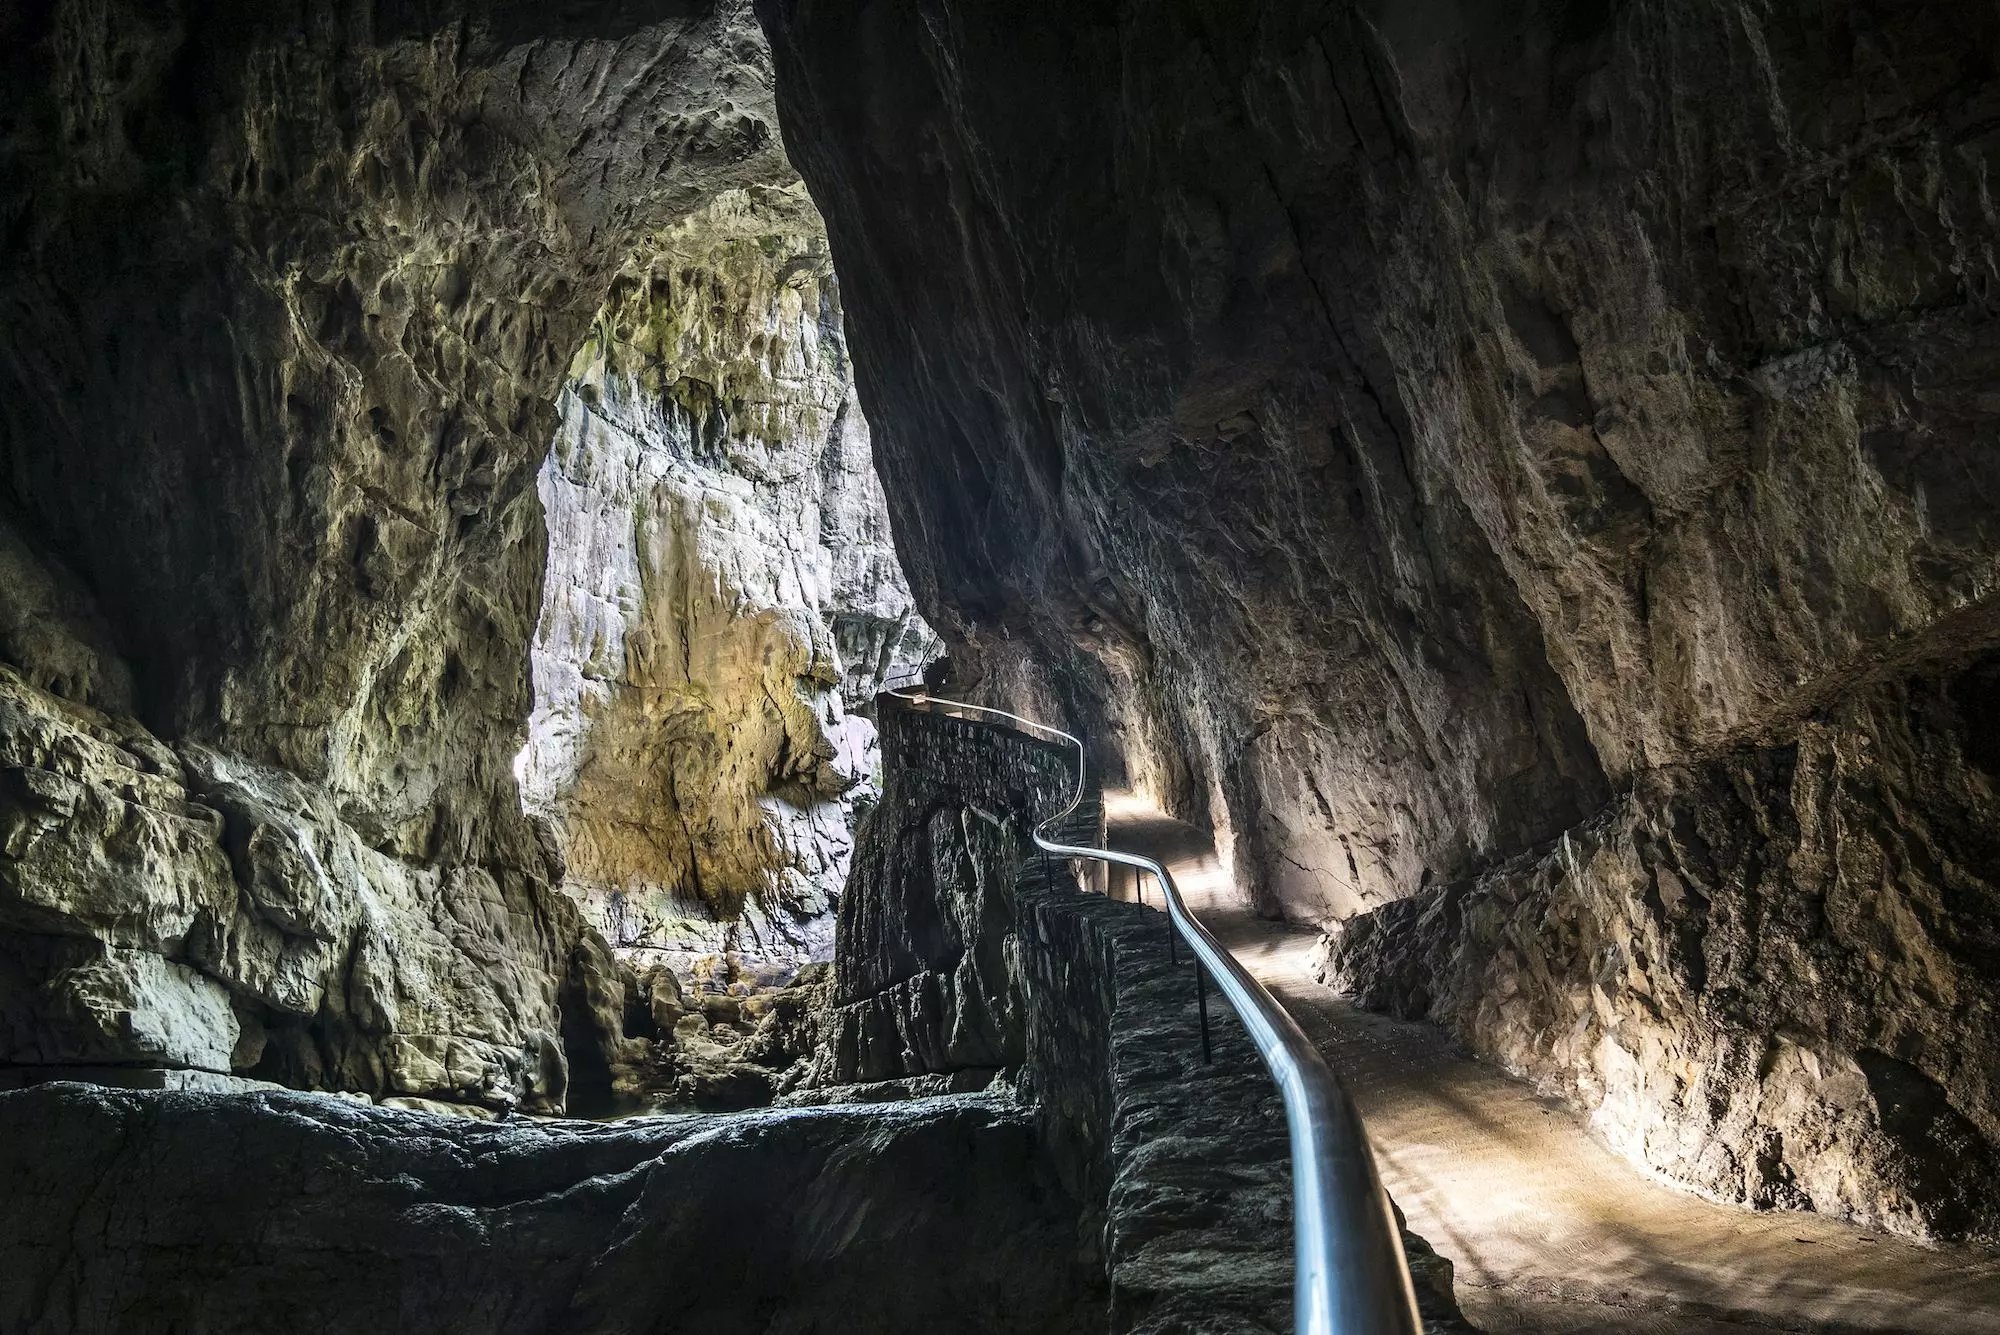 A fantasztikus méretekkel bíró Skocjan barlangrendszer Szlovéniában